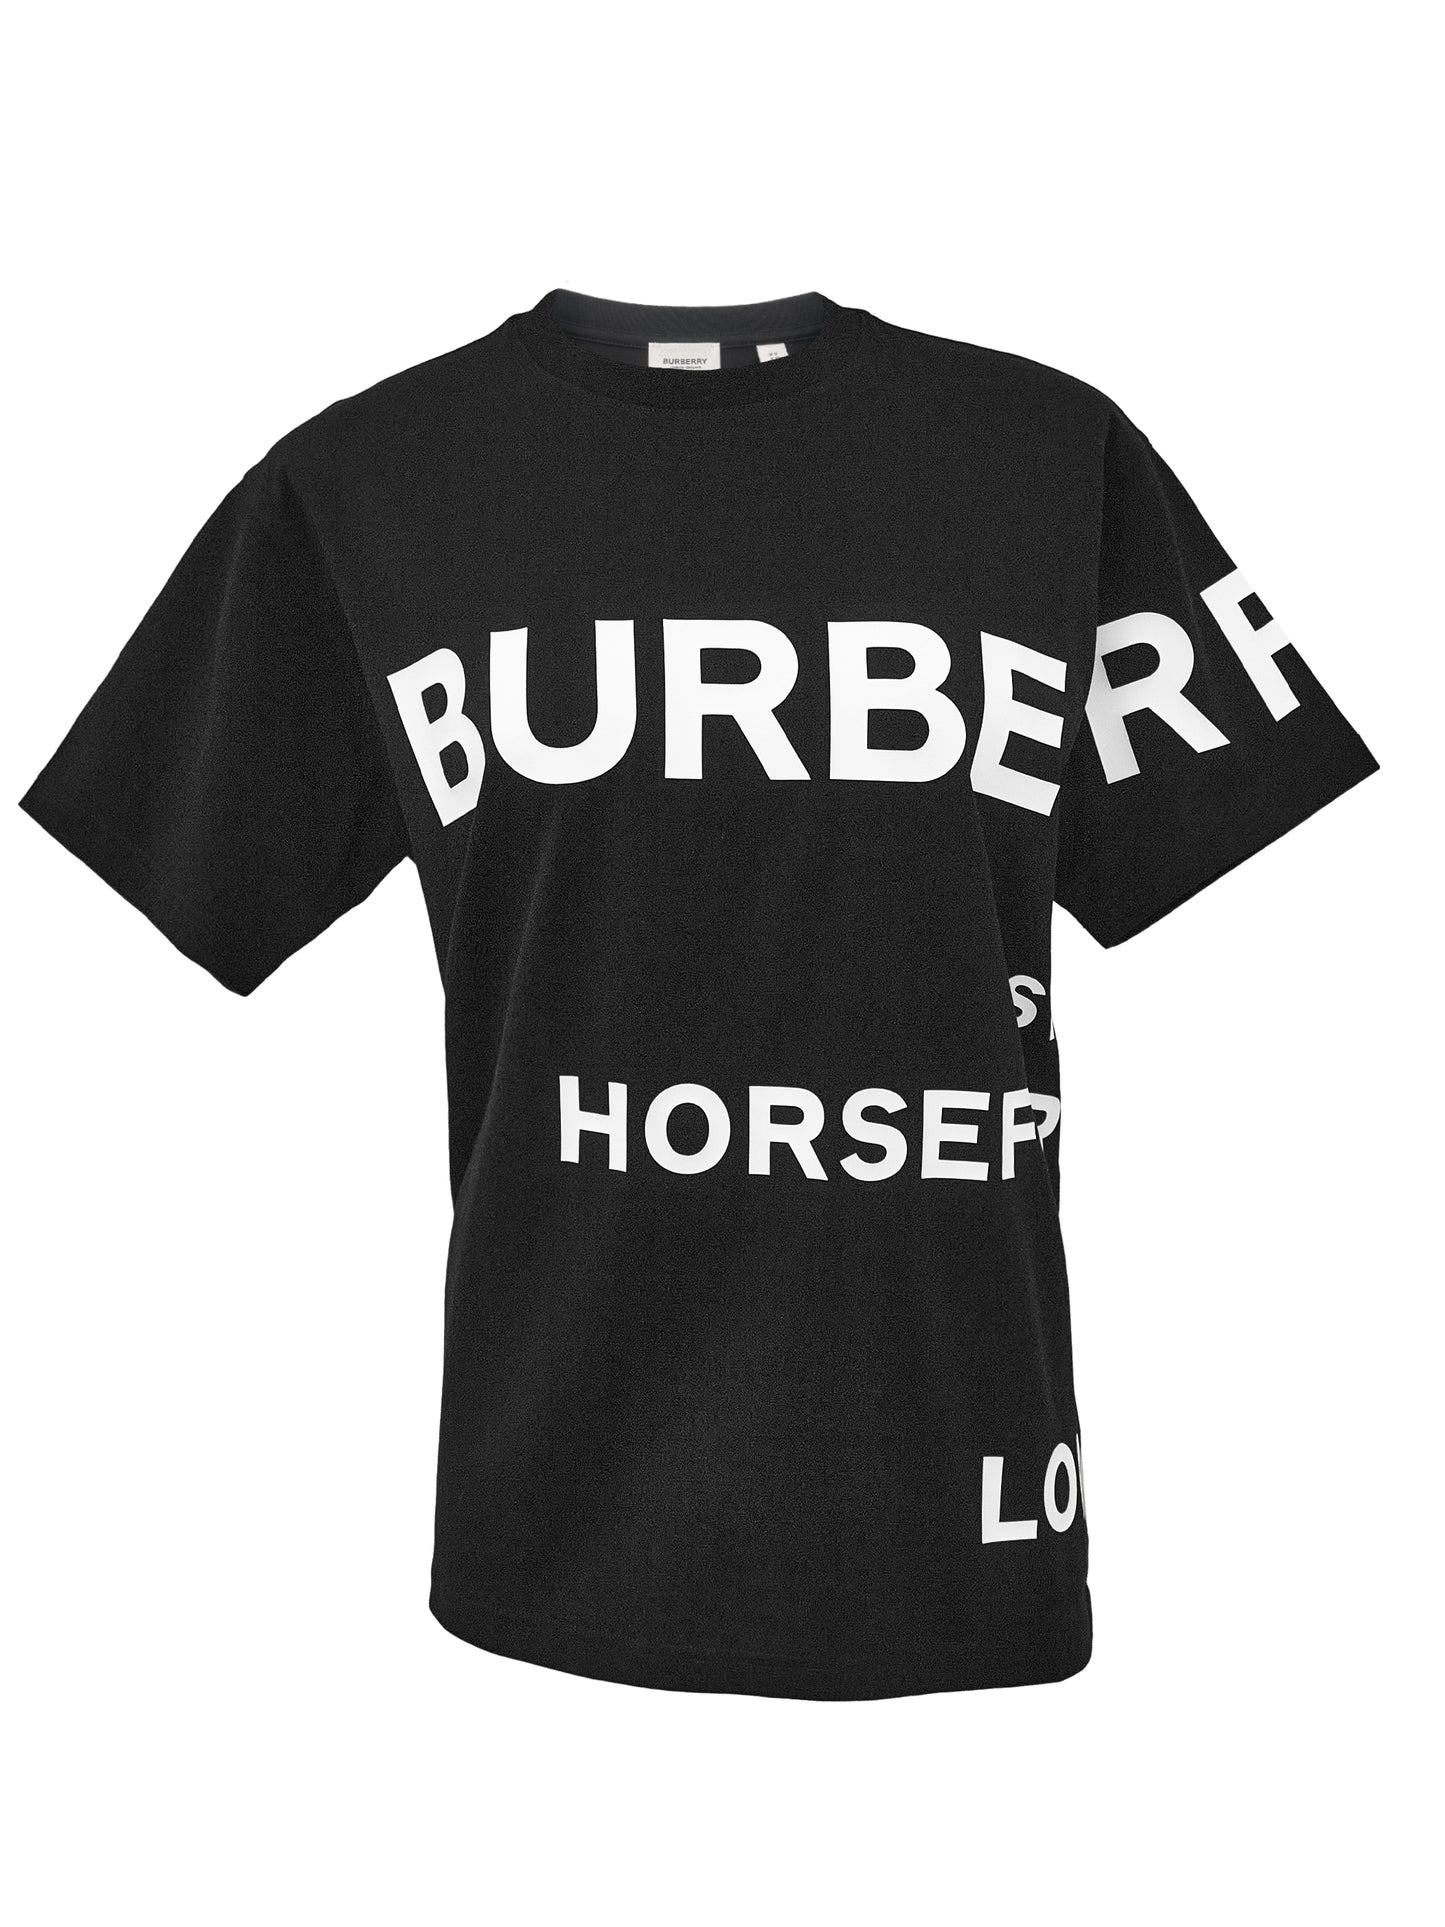 Burberry T-Shirt Schwarz/Weiss